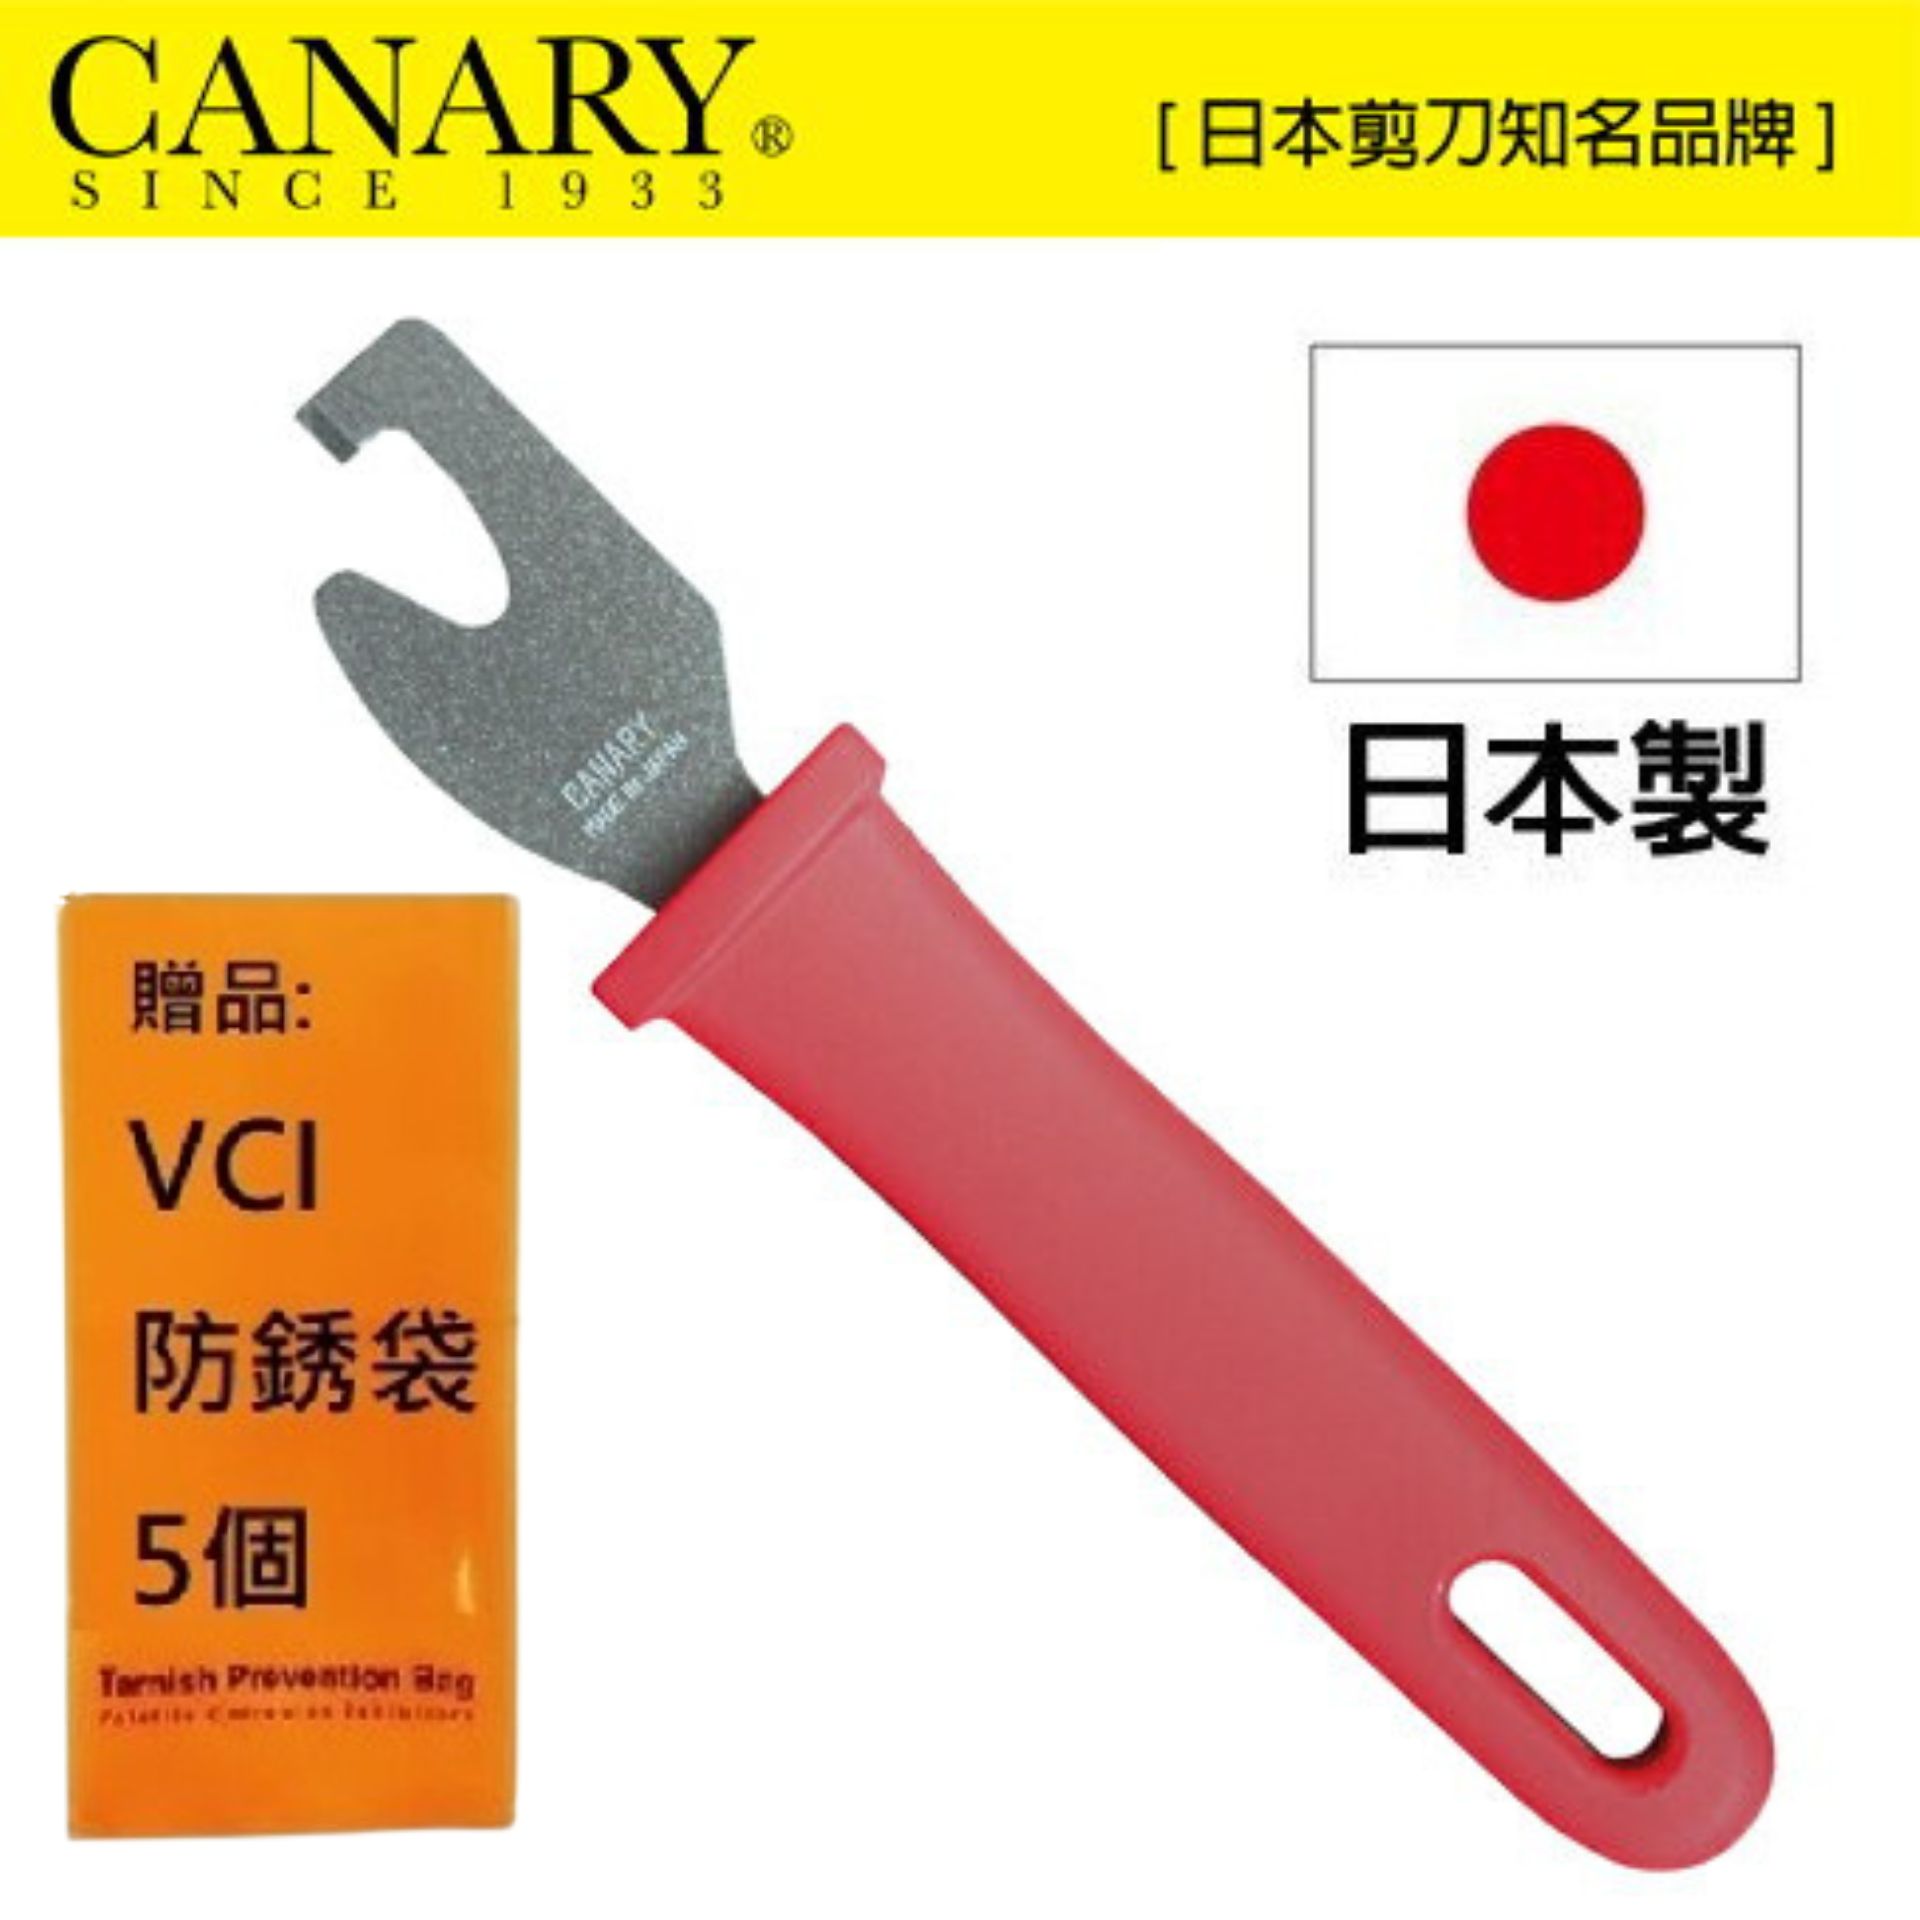 【日本CANARY】寶特瓶蓋環拆除小幫手 RT-200 貼心減輕清潔人員的工作負擔